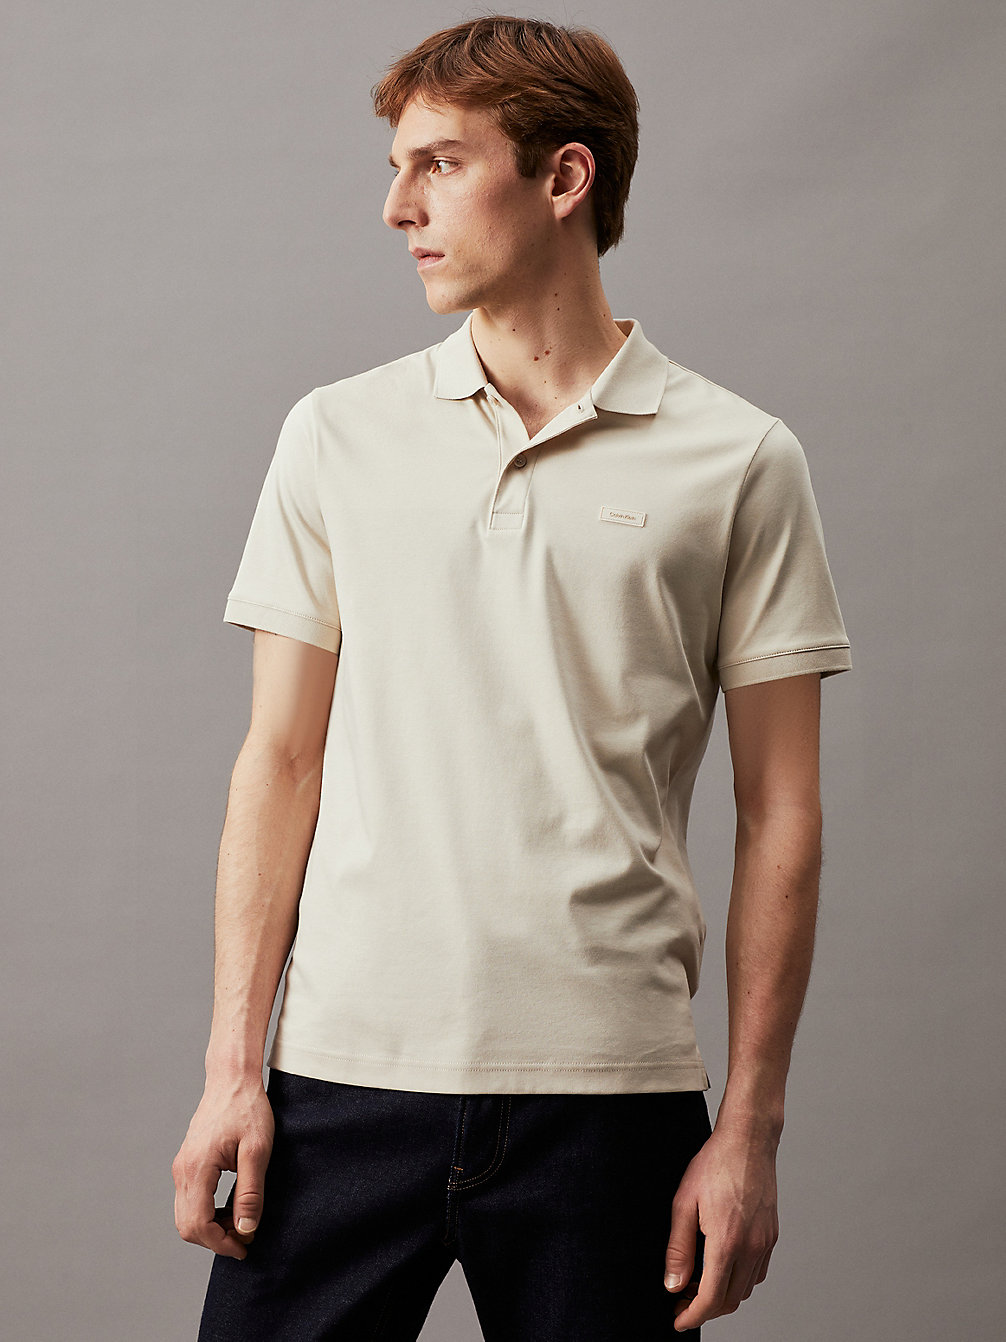 STONY BEIGE > Wąska Koszulka Polo > undefined Mężczyźni - Calvin Klein